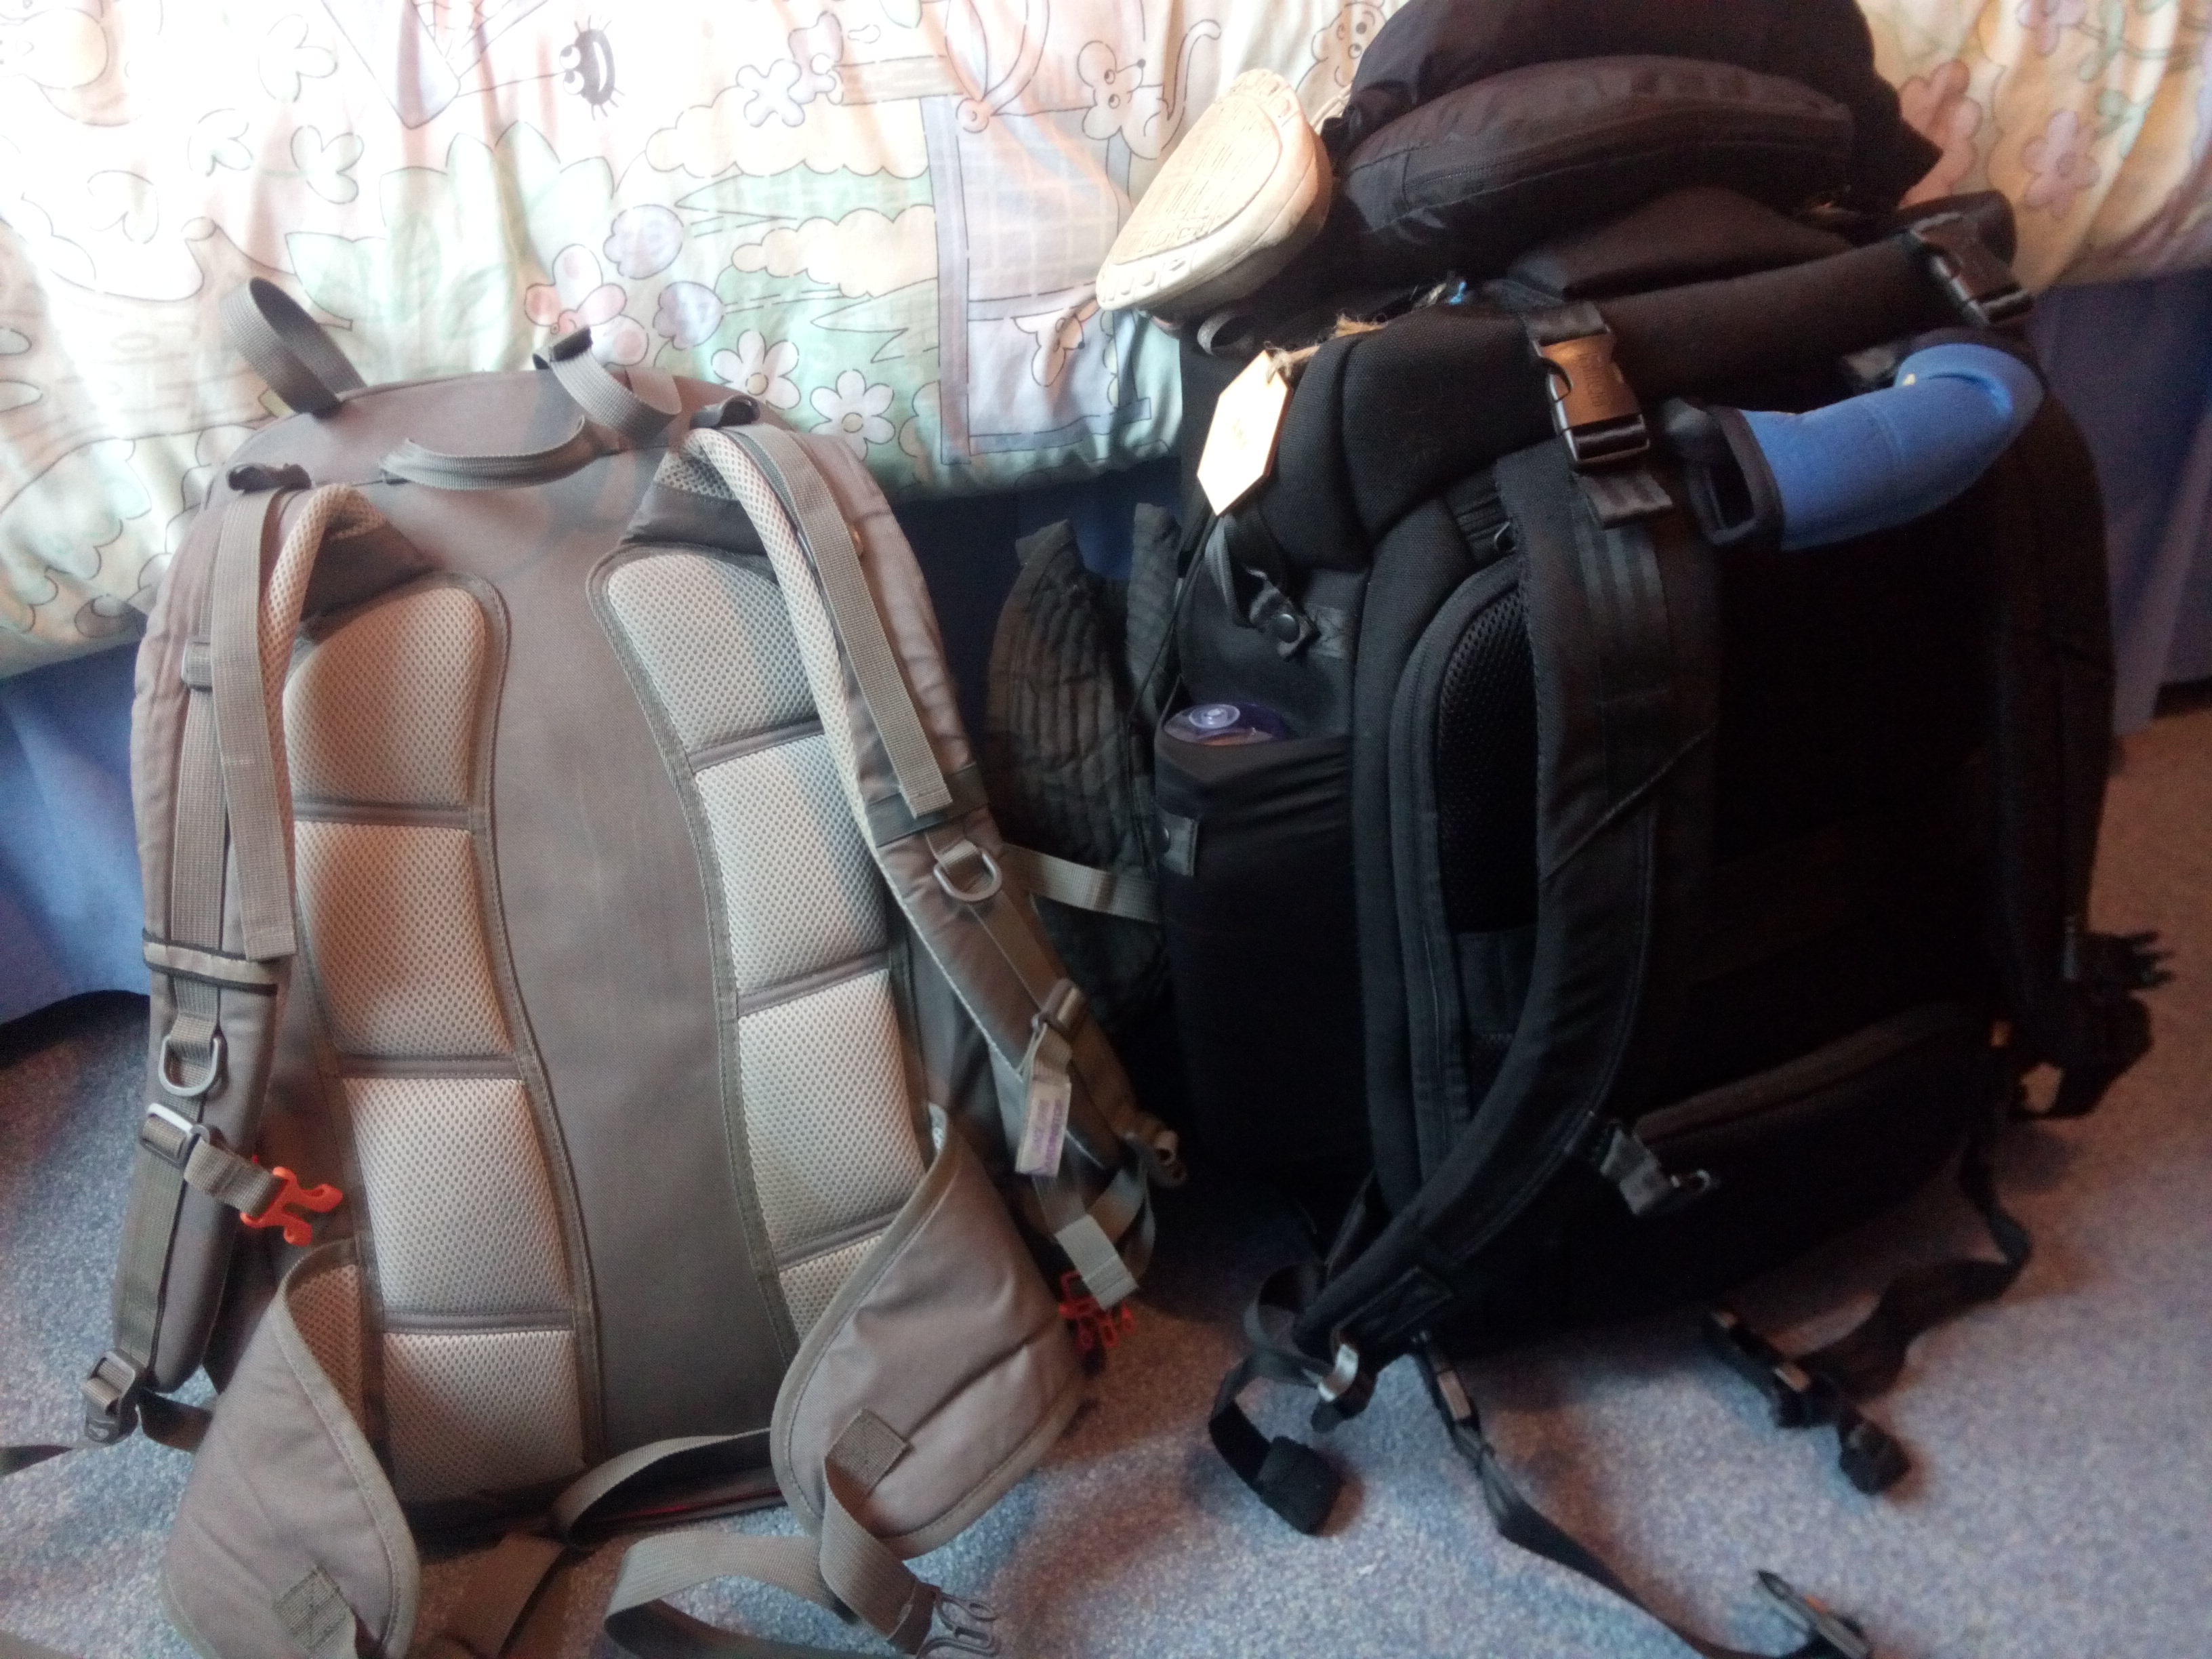 The RE Make Breakfast Club Resident Evil Backpack Daypack Rucksack Laptop Shoulder Bag with USB Charging Port 